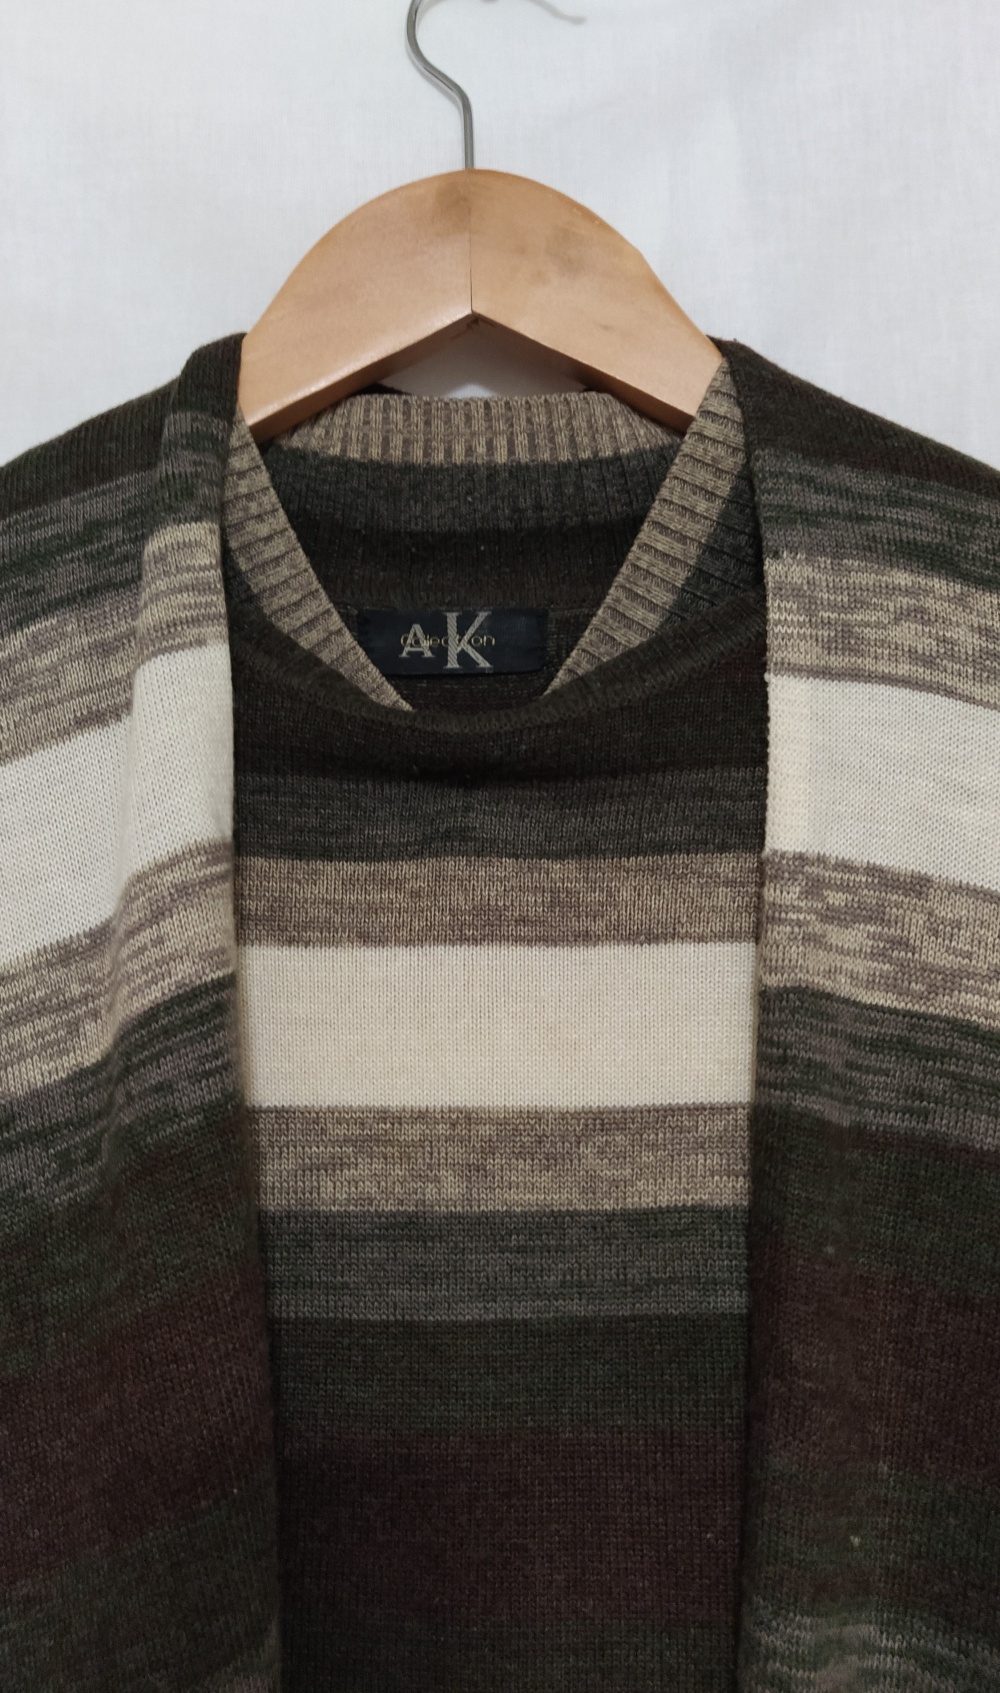 Шерстяной комплект:свитер с палантином A K collection, L